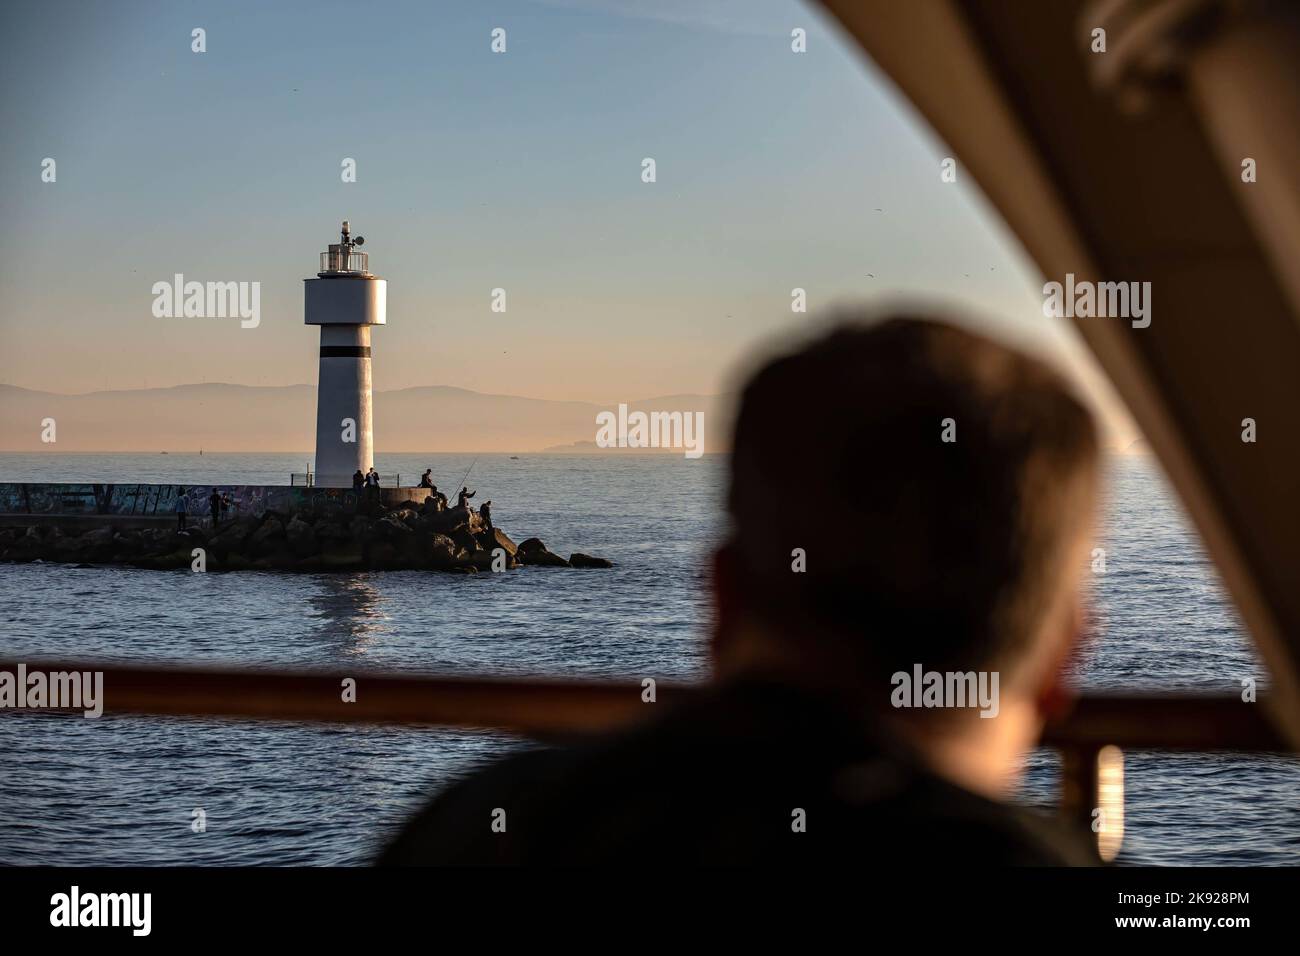 Un passager observe les lignes de ferry de la ville qui s'approchent de la jetée de Kadikoy avec le phare d'Inciburu en arrière-plan au coucher du soleil. Banque D'Images